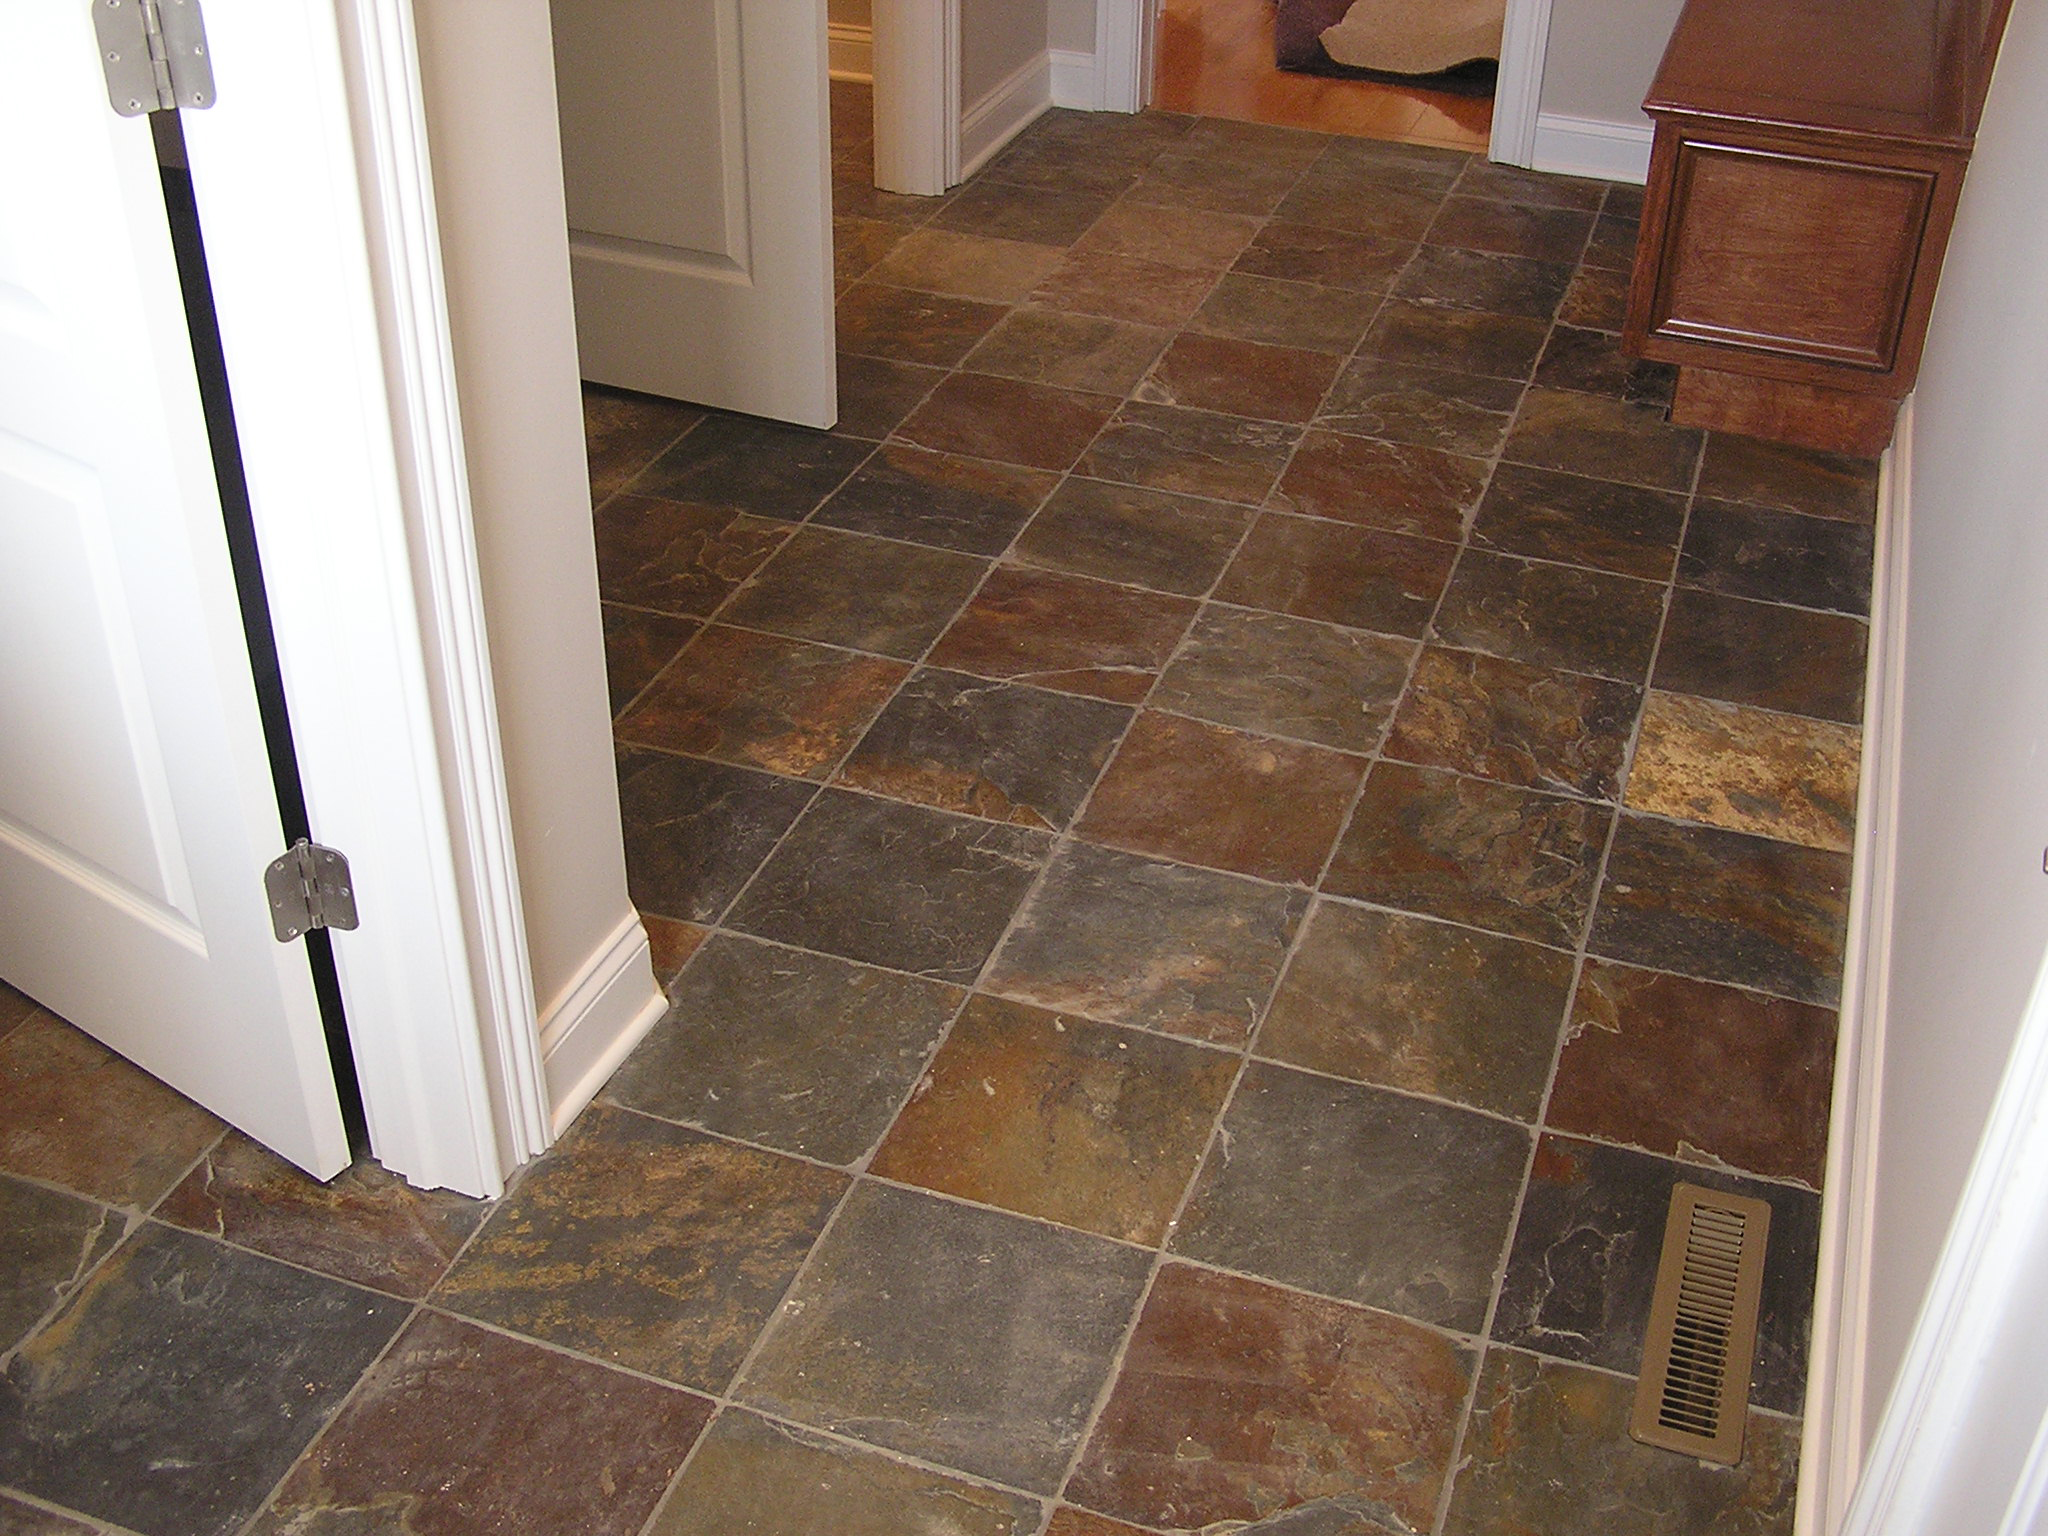 Early Slate Tile Floor